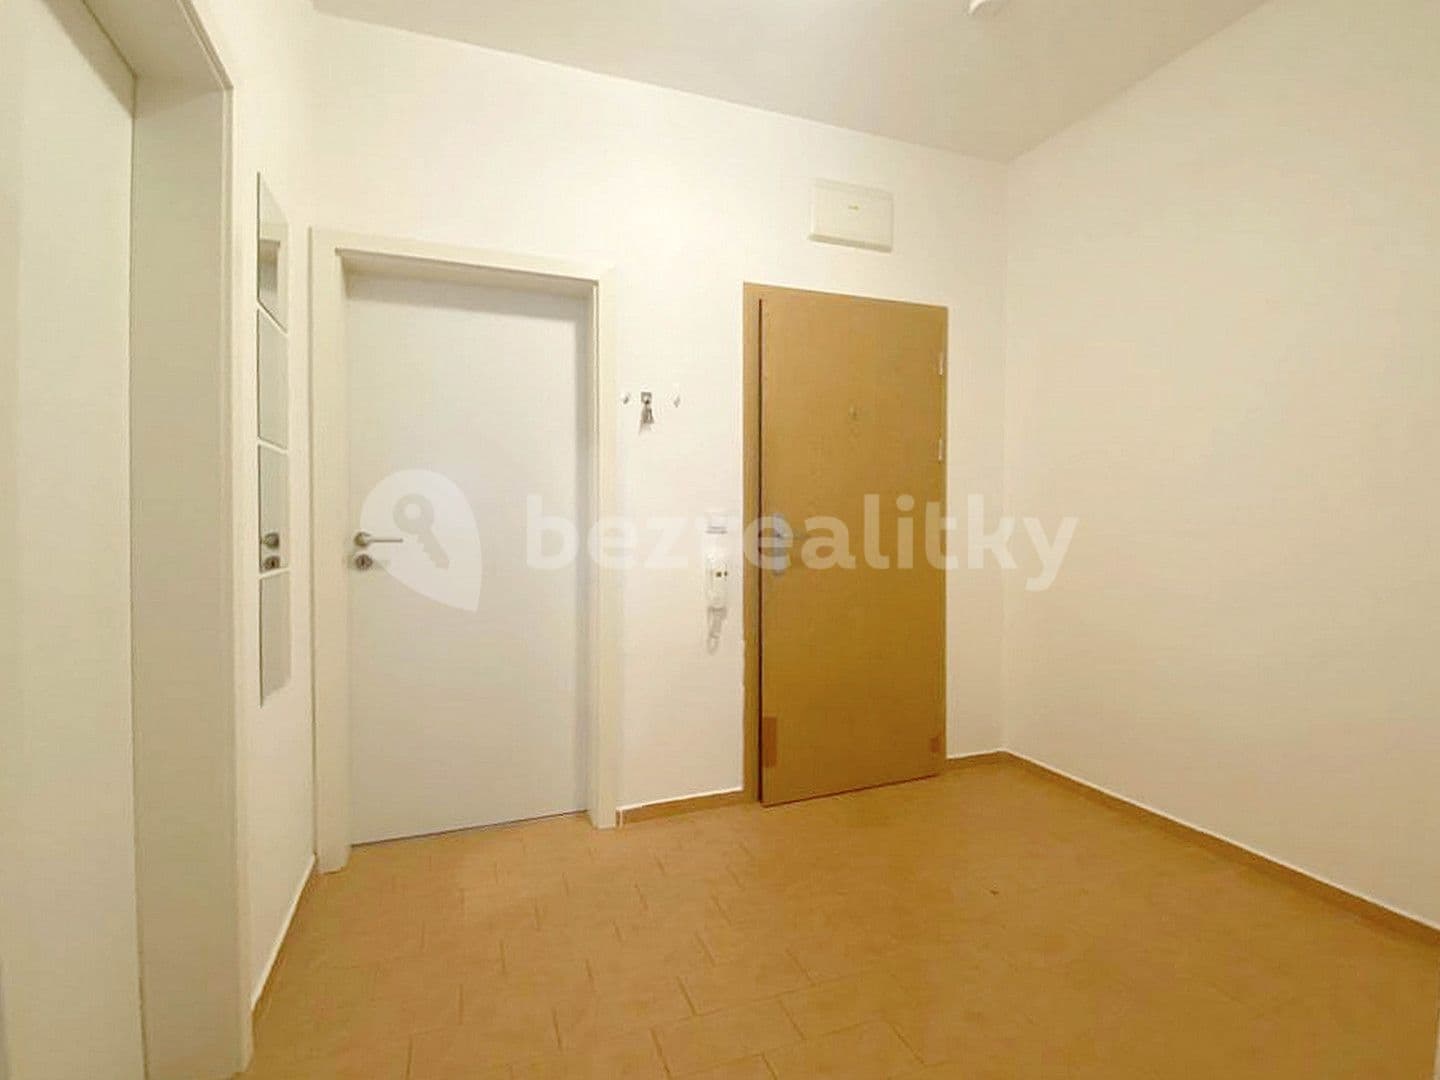 1 bedroom with open-plan kitchen flat for sale, 63 m², Osvoboditelů, Lovosice, Ústecký Region